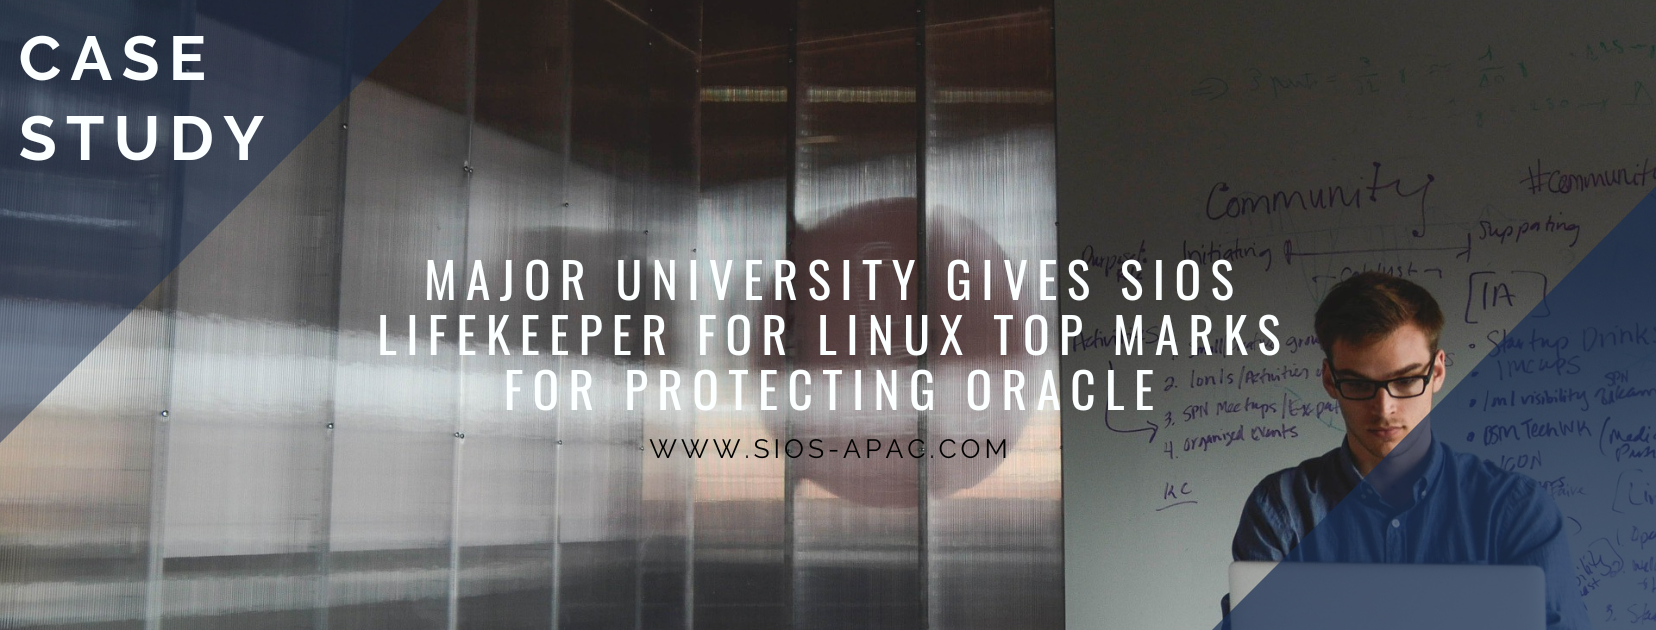 主要大学授予 SIOS LifeKeeper for Linux 在保护 Oracle 方面的最高分